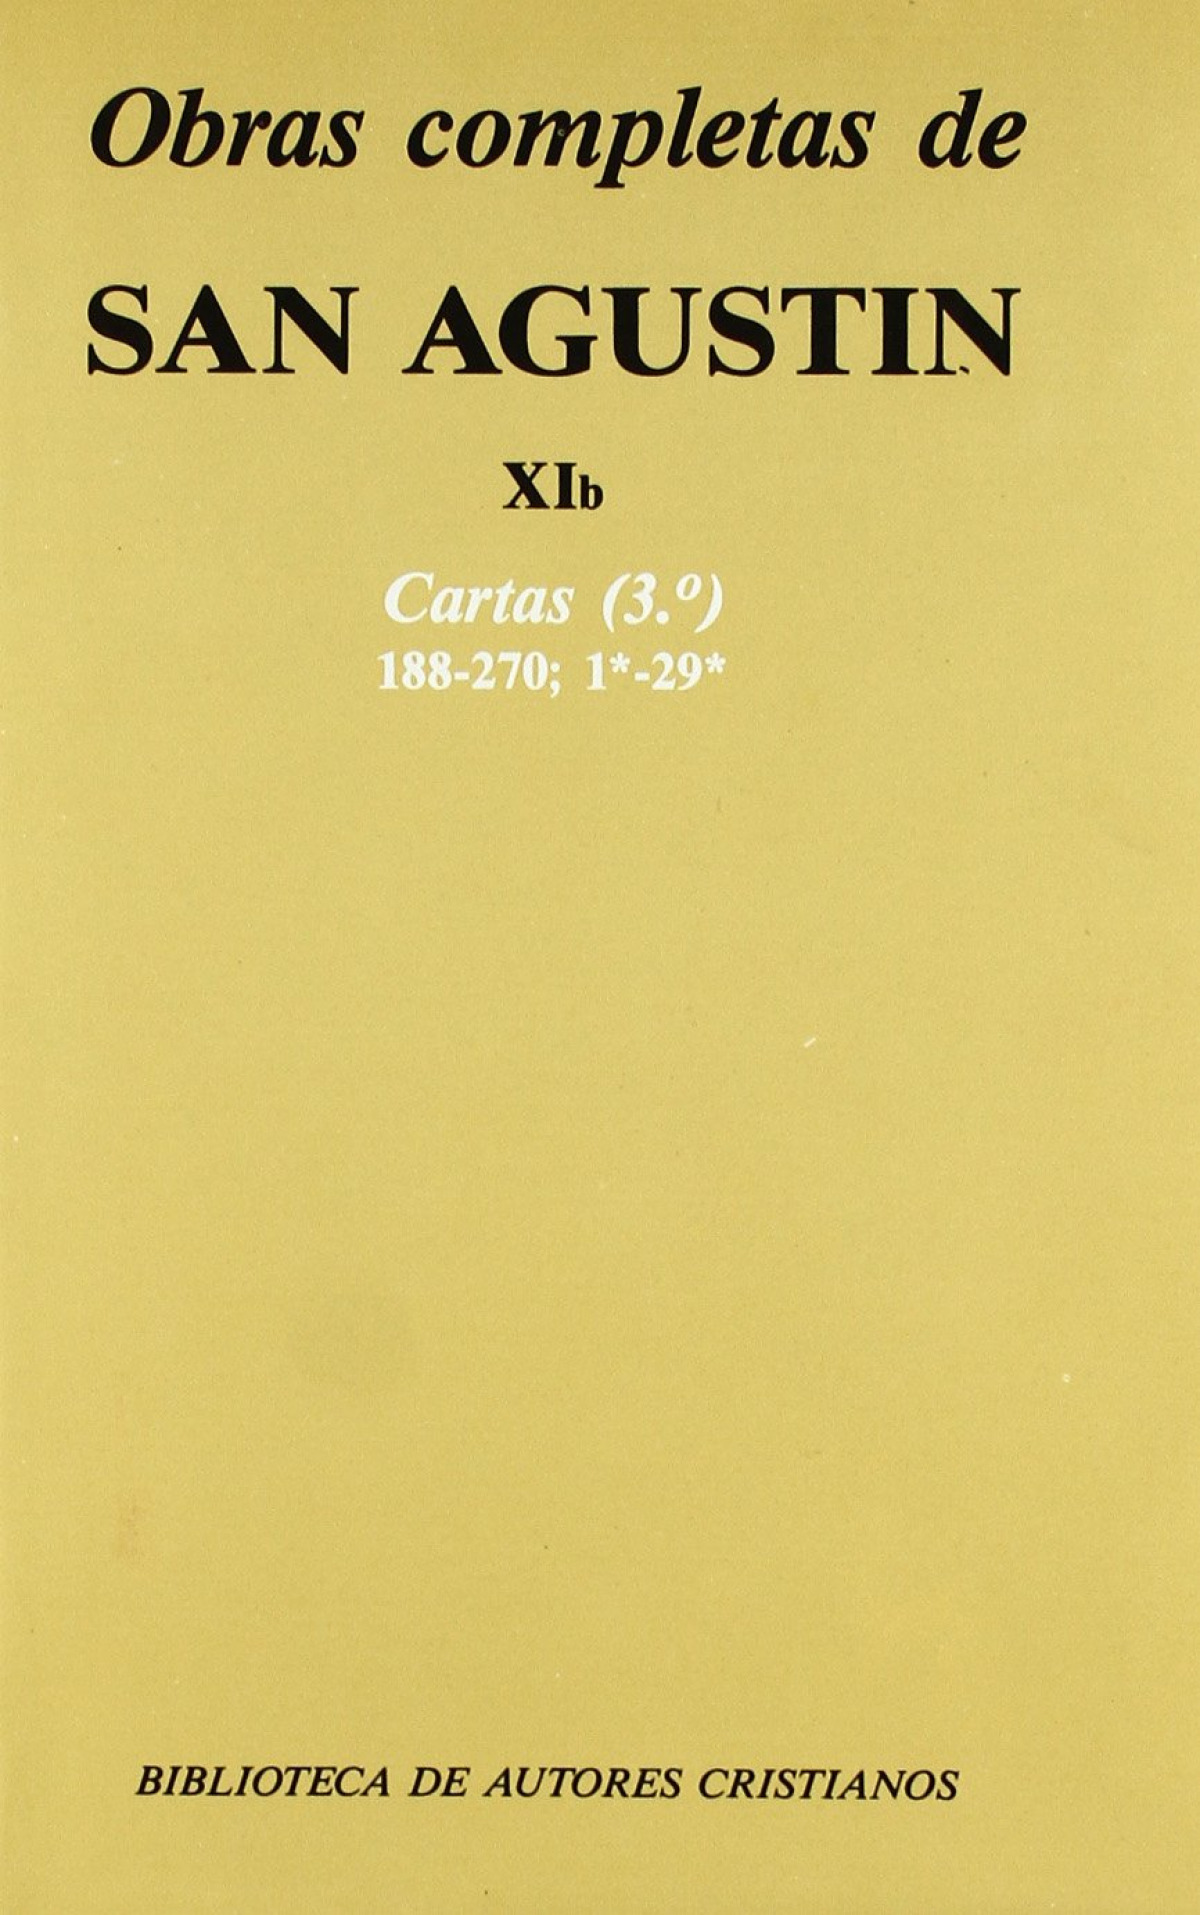 Obras completas de San Agustín.XIb: Cartas (3.º): 188-270 - San Agustín